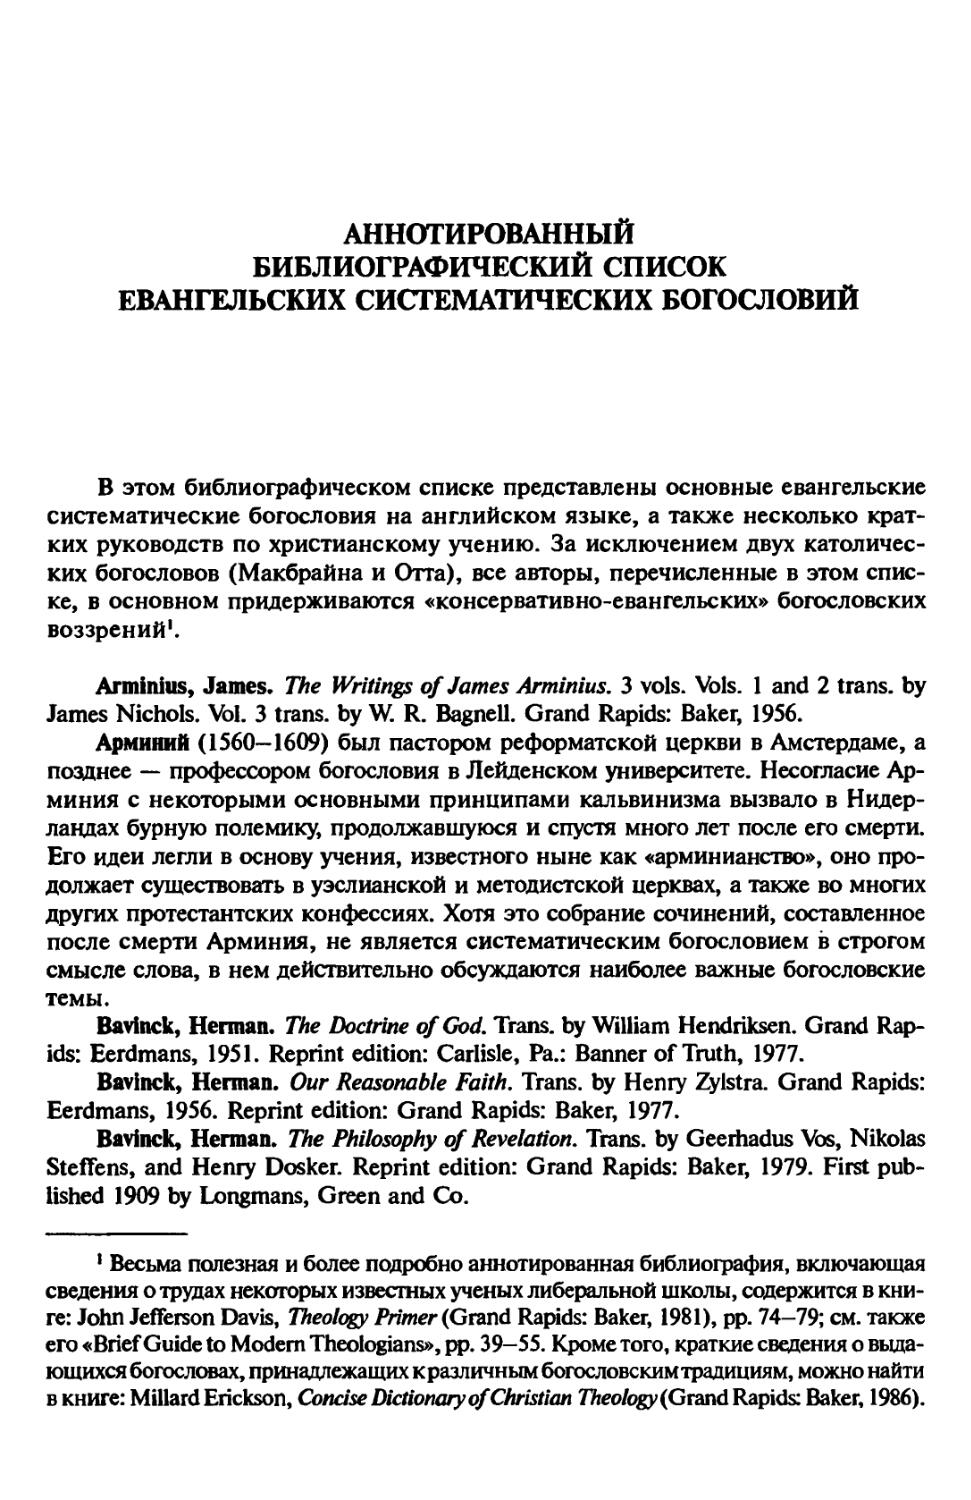 Аннотированный библиографический список евангельских систематических богословии